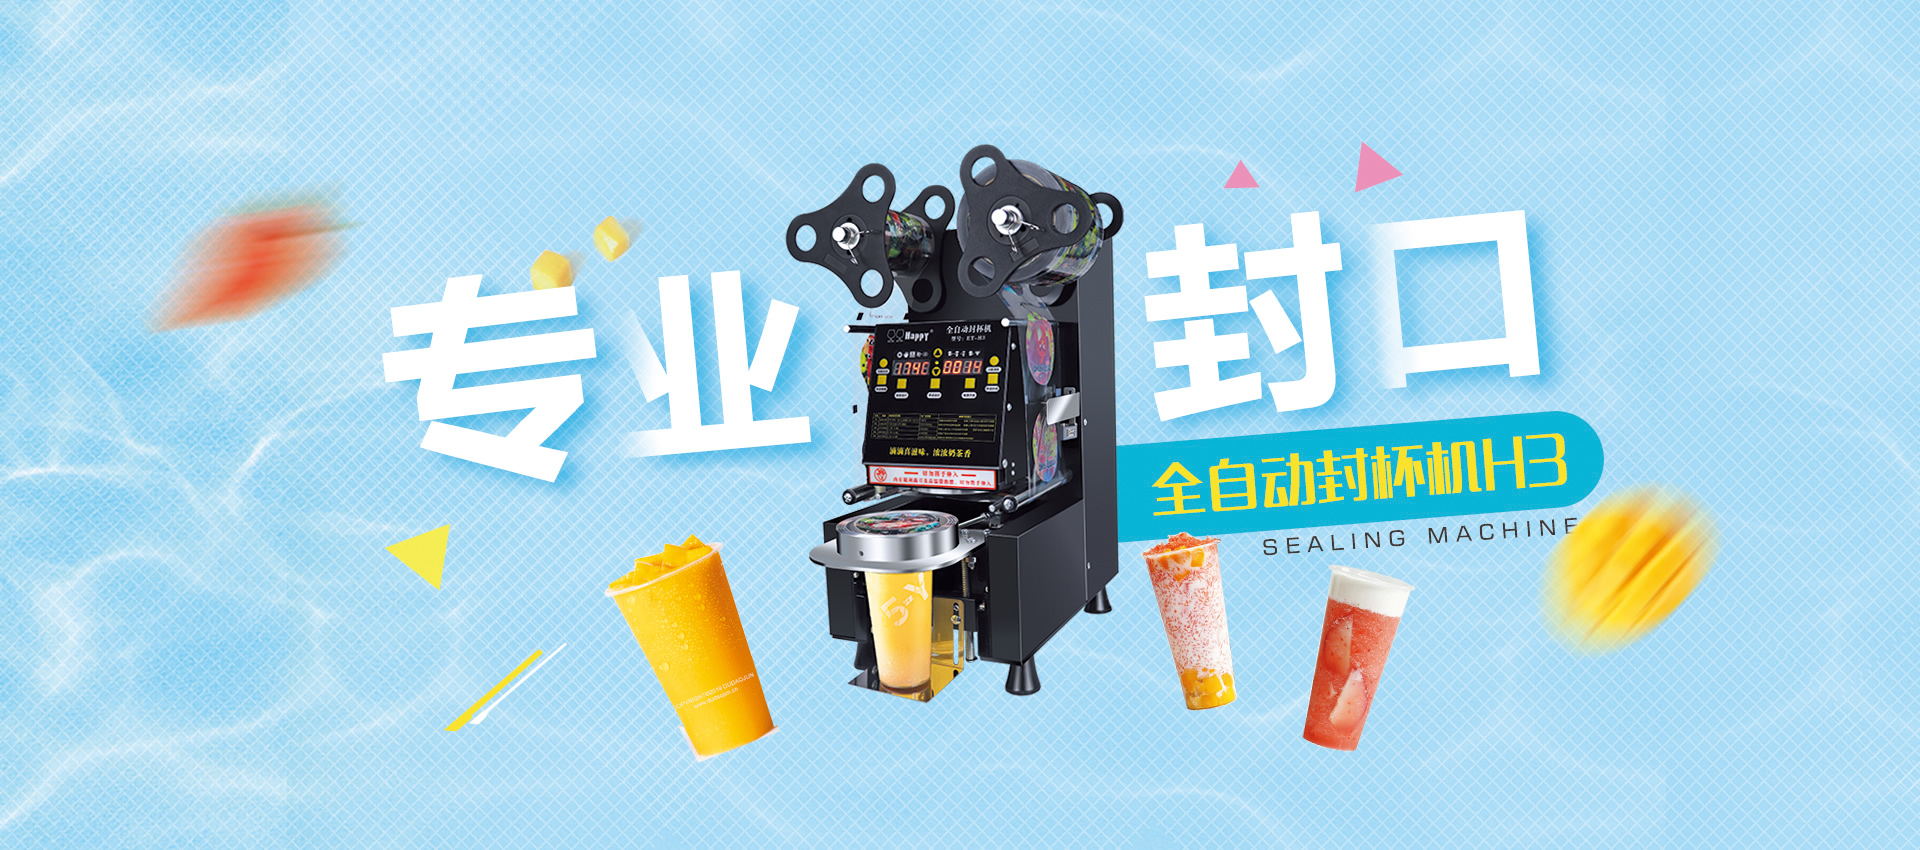 bn1-伊东机电是一家全自动封杯机、磨煮一体豆浆机的厂家